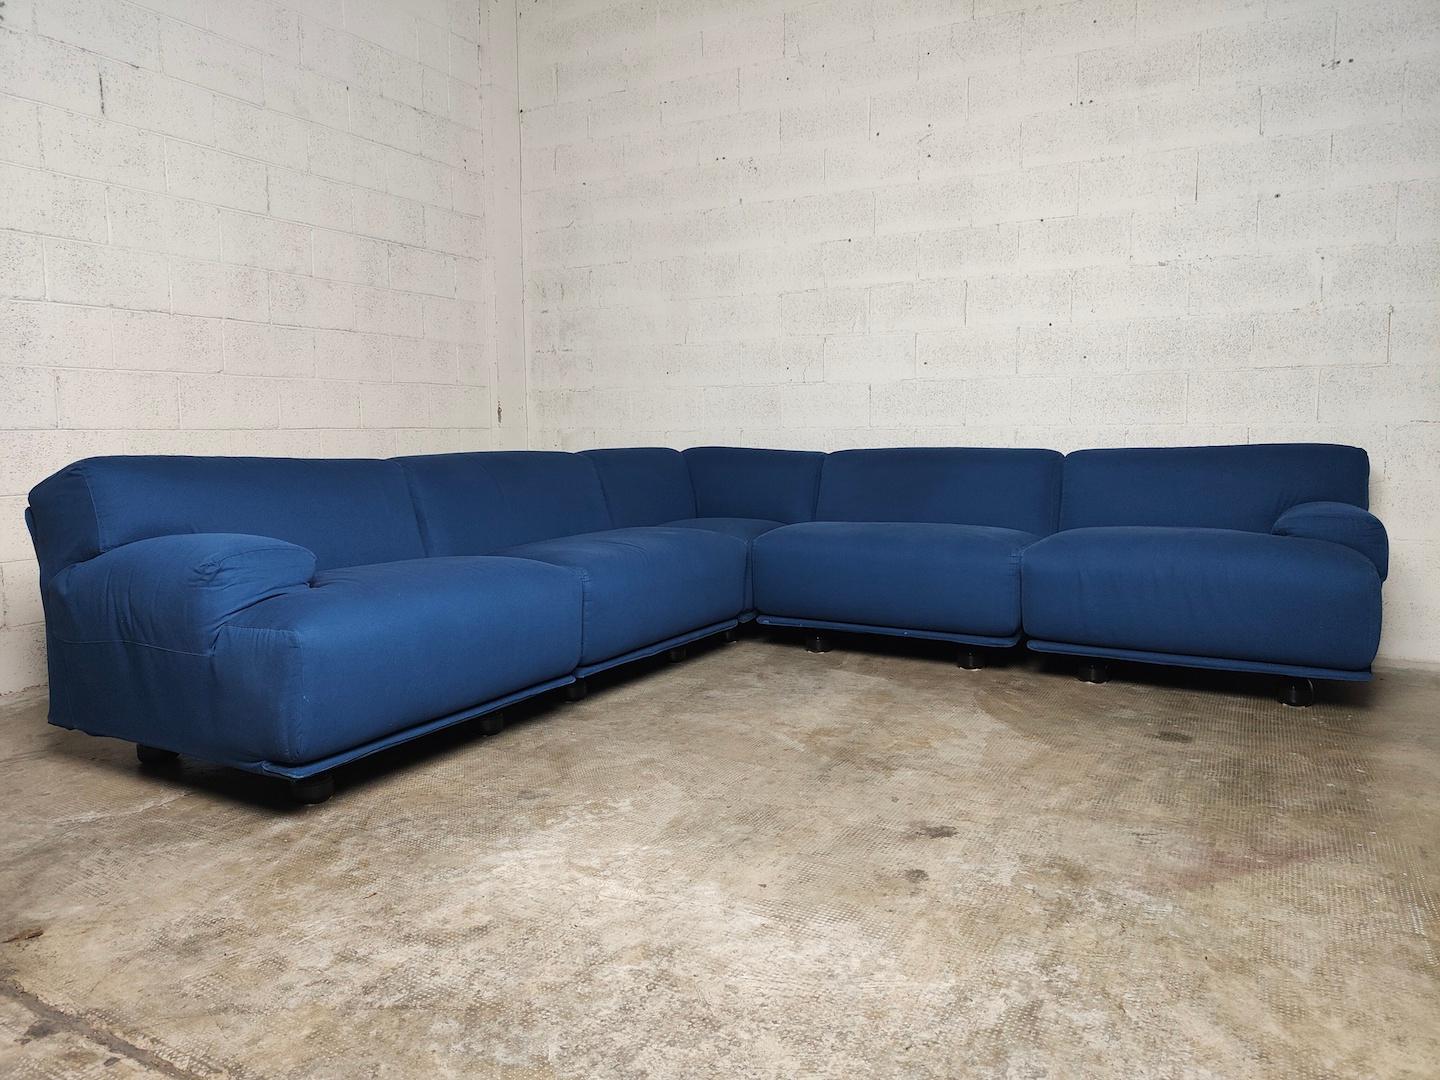 Fiandra modular sofa by Vico Magistretti for Cassina 70s For Sale 4